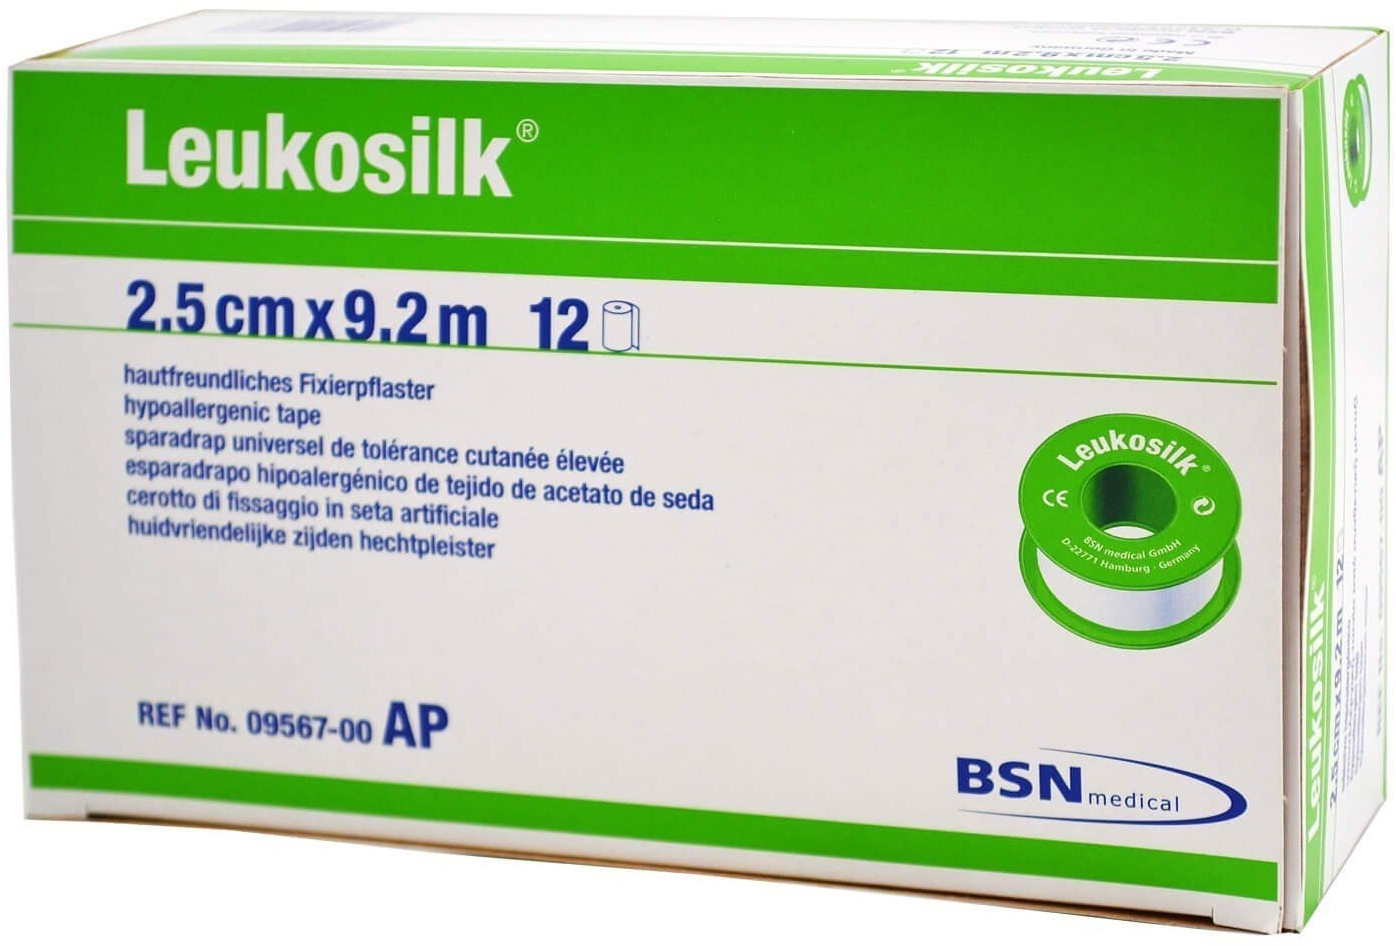 BSN Medical Leukosilk 2,50 cm x 9,2 m ohne Schutzring ab 5,34 €